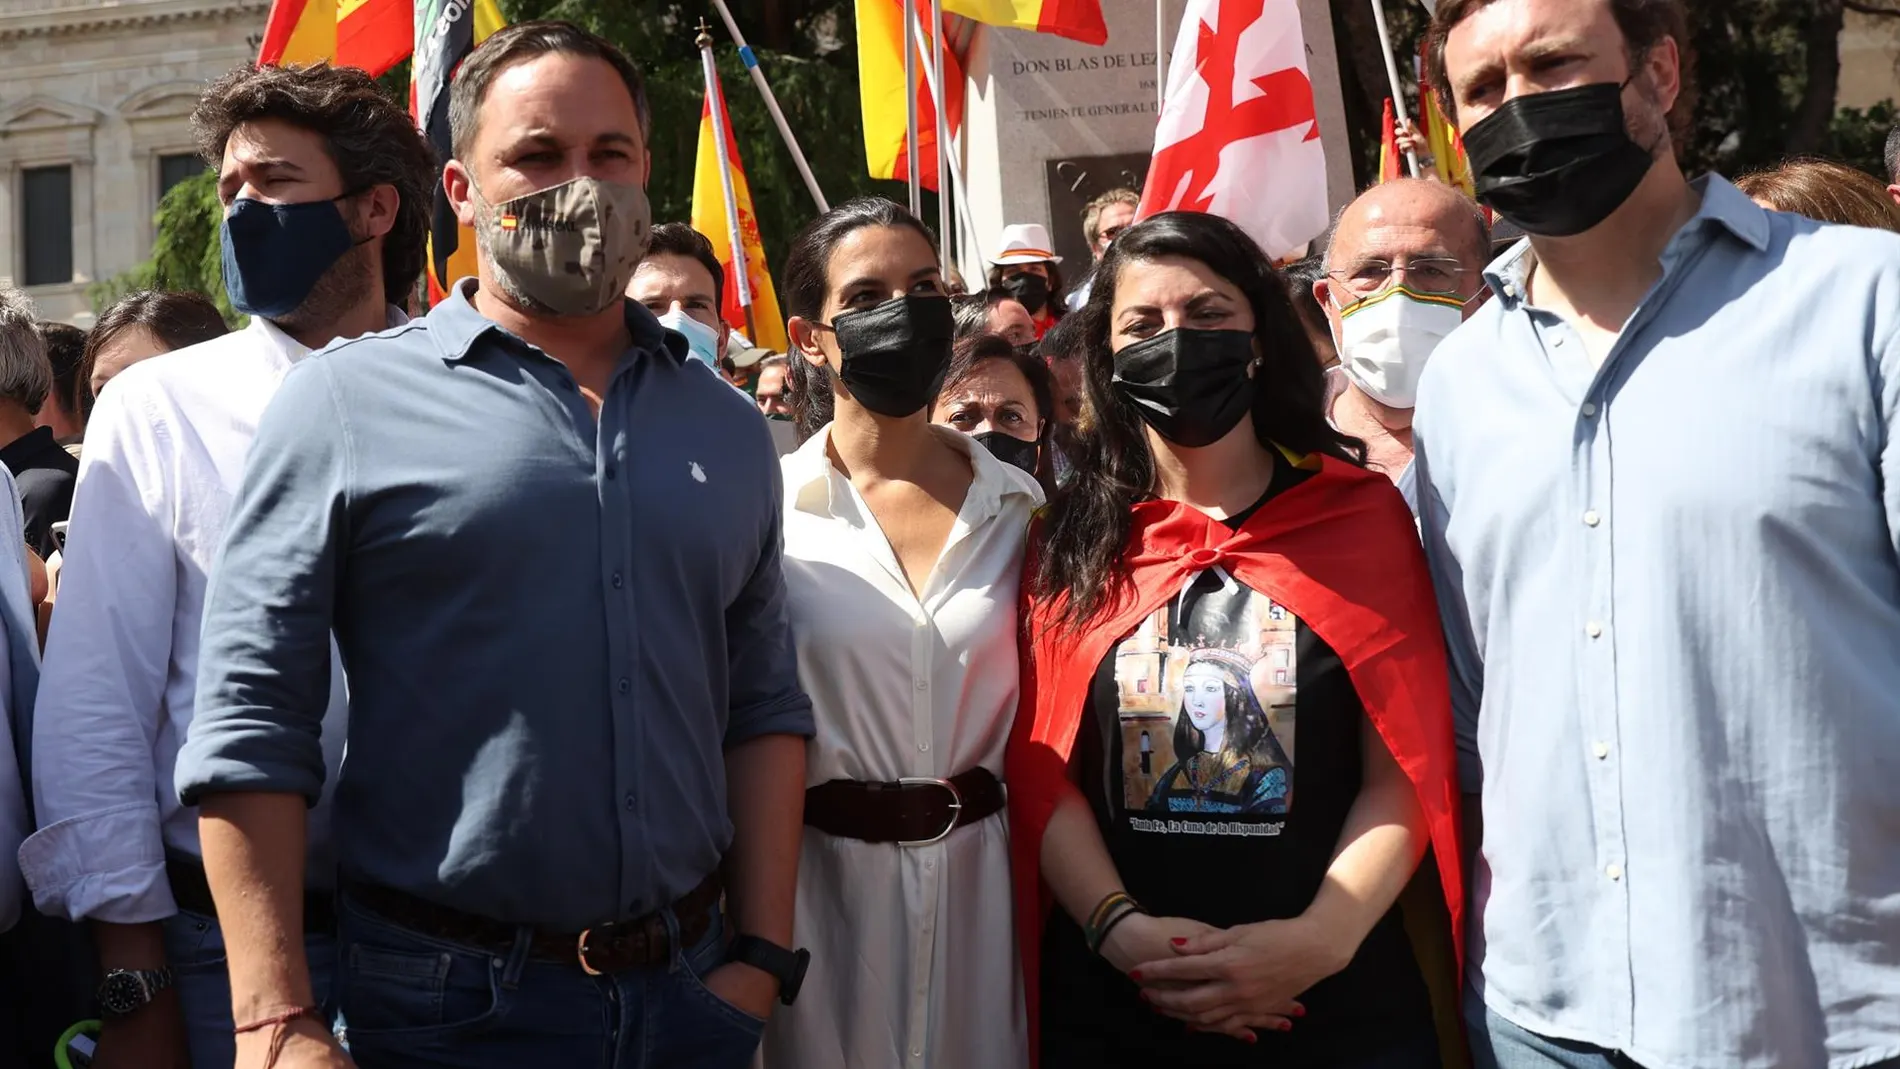 Santiago Abascal en la manifestación de Colón: "Los indultos son una traición"